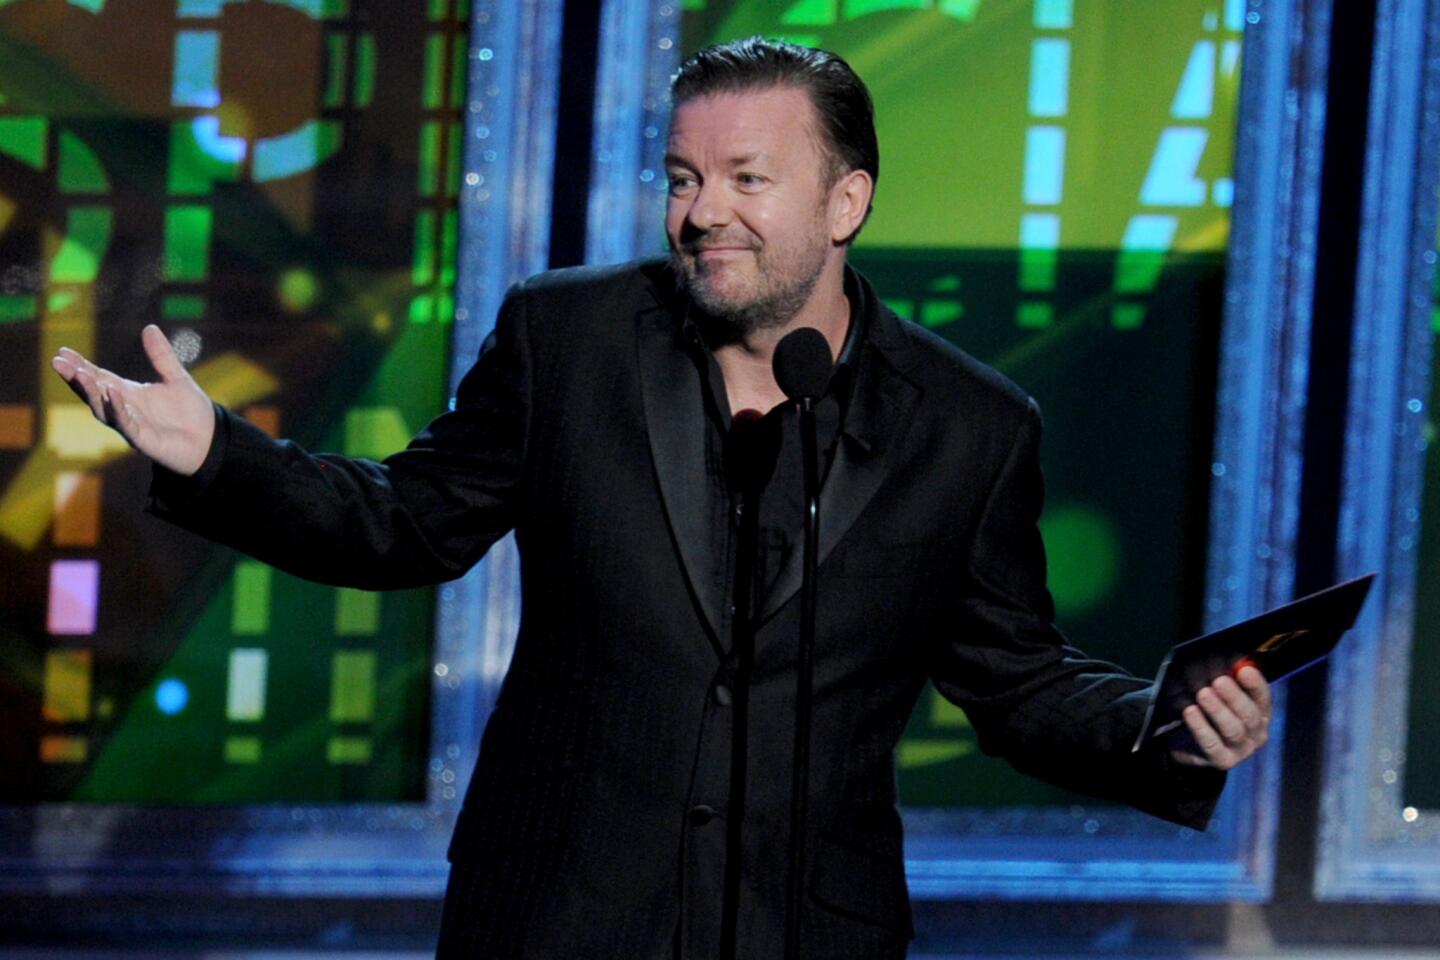 Ricky Gervais has a crisis of (non)-faith